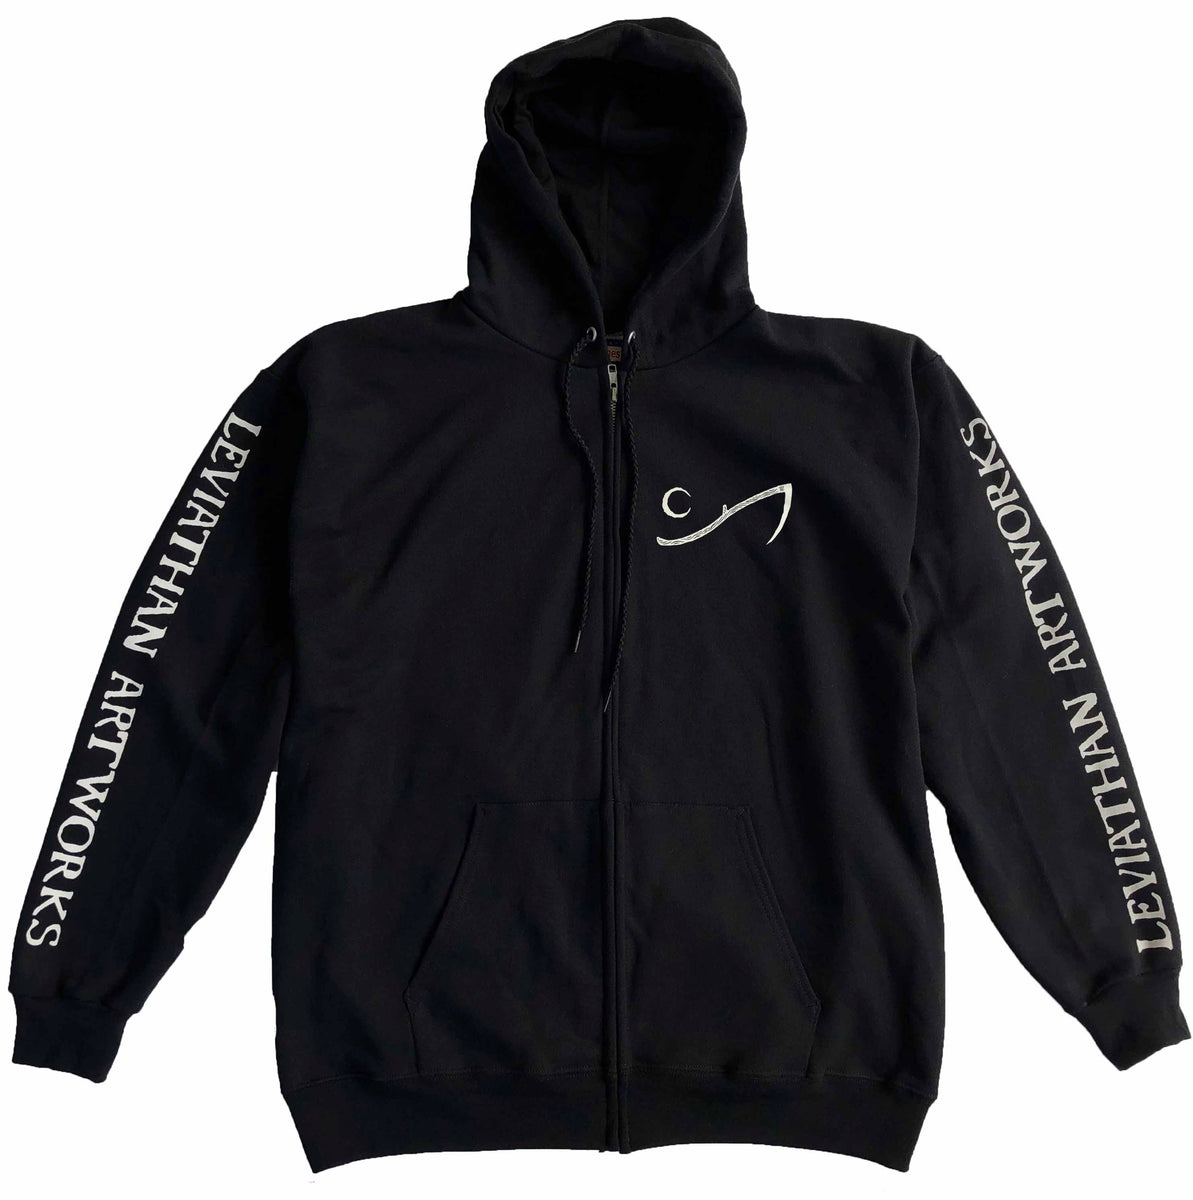 Black Seas of Infinity zip hoodie – Leviathan Artworks